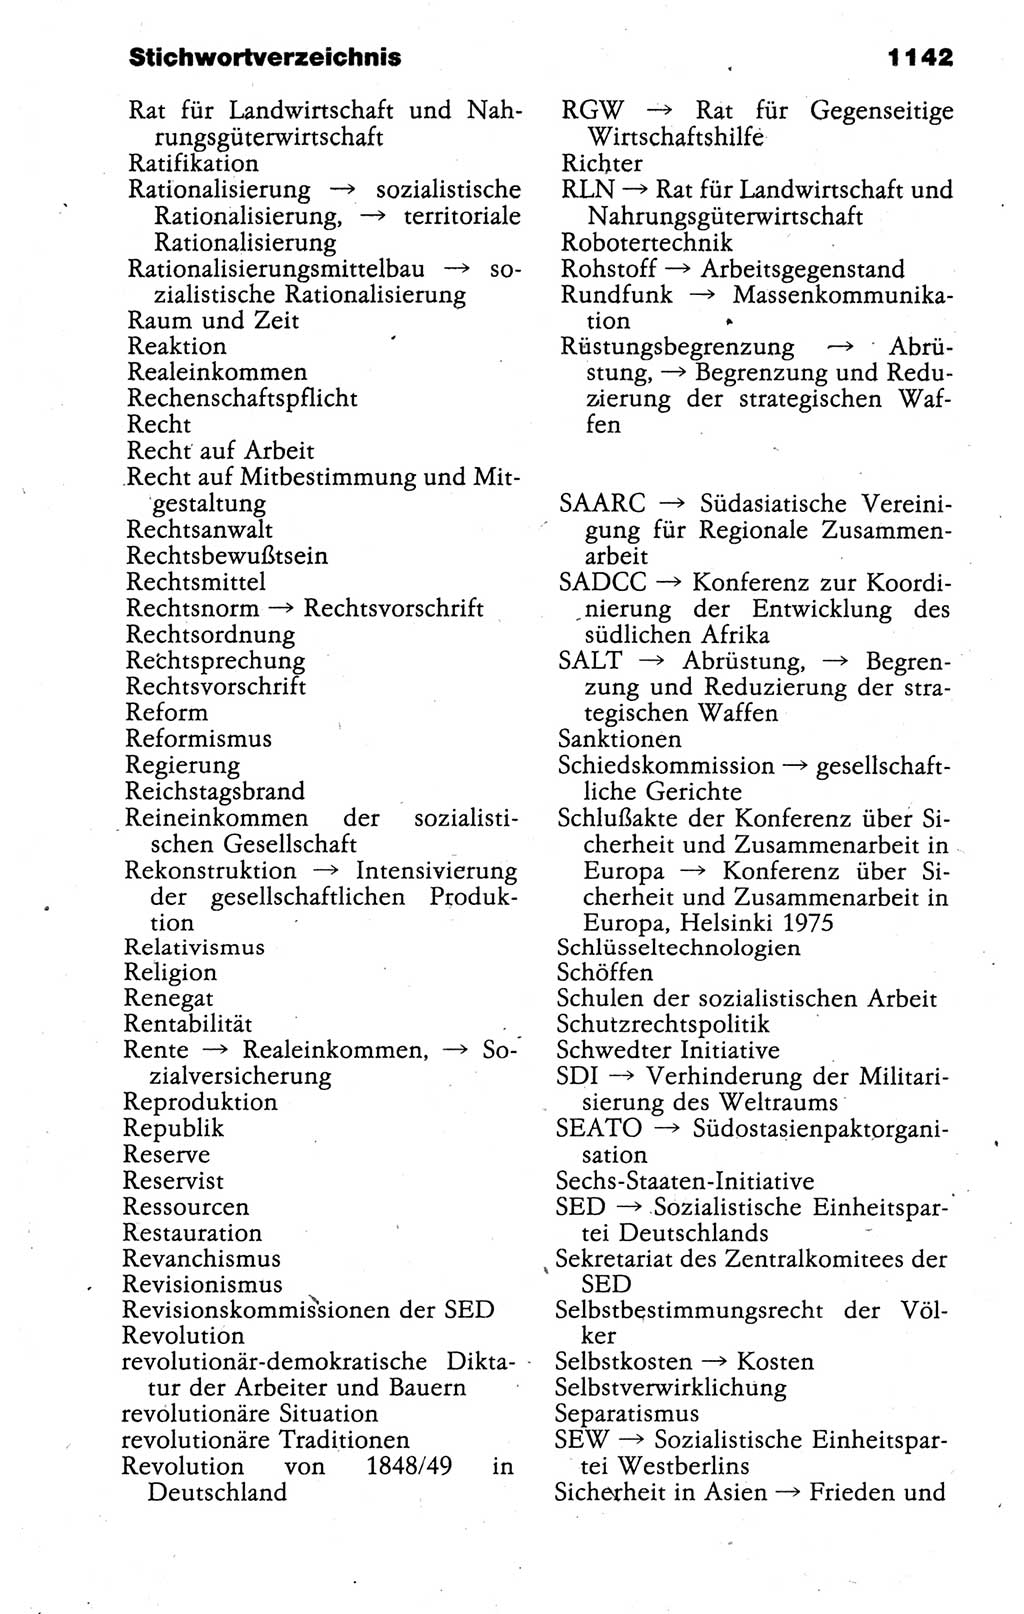 Kleines politisches Wörterbuch [Deutsche Demokratische Republik (DDR)] 1988, Seite 1142 (Kl. pol. Wb. DDR 1988, S. 1142)